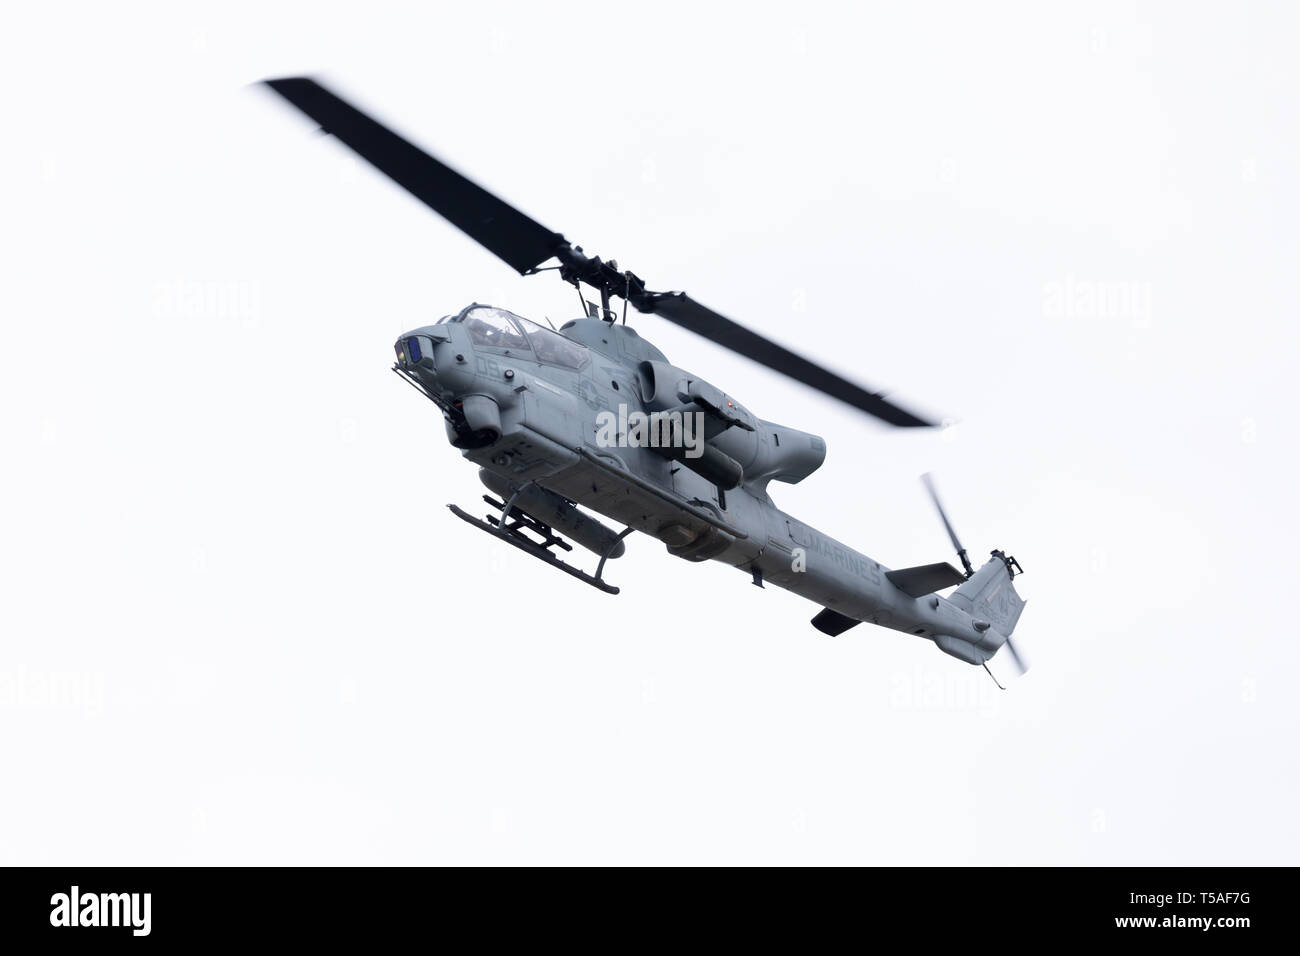 Louisville, Kentucky, USA - 13. April 2019: Donner über Louisville, United States Marine Corps AH-1 Cobra Kampfhubschrauber Durchführen einer Fliege von über Stockfoto